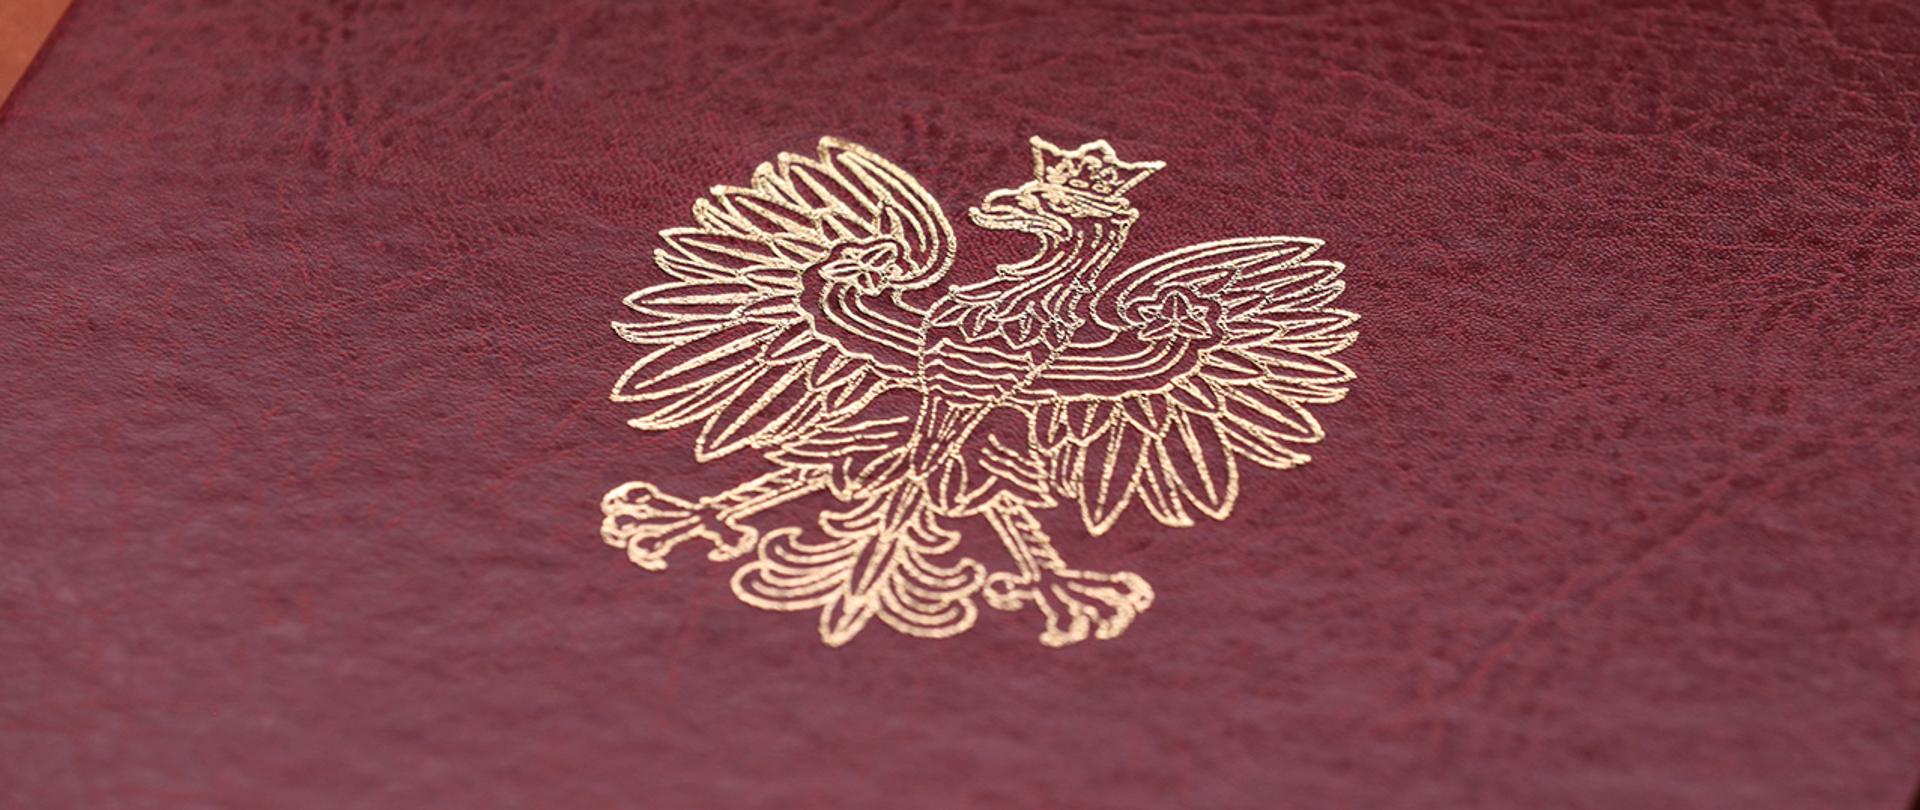 Na zdjęciu widać fragment twardej oprawy na dokumenty z wytłoczonym orłem z godła narodowego.